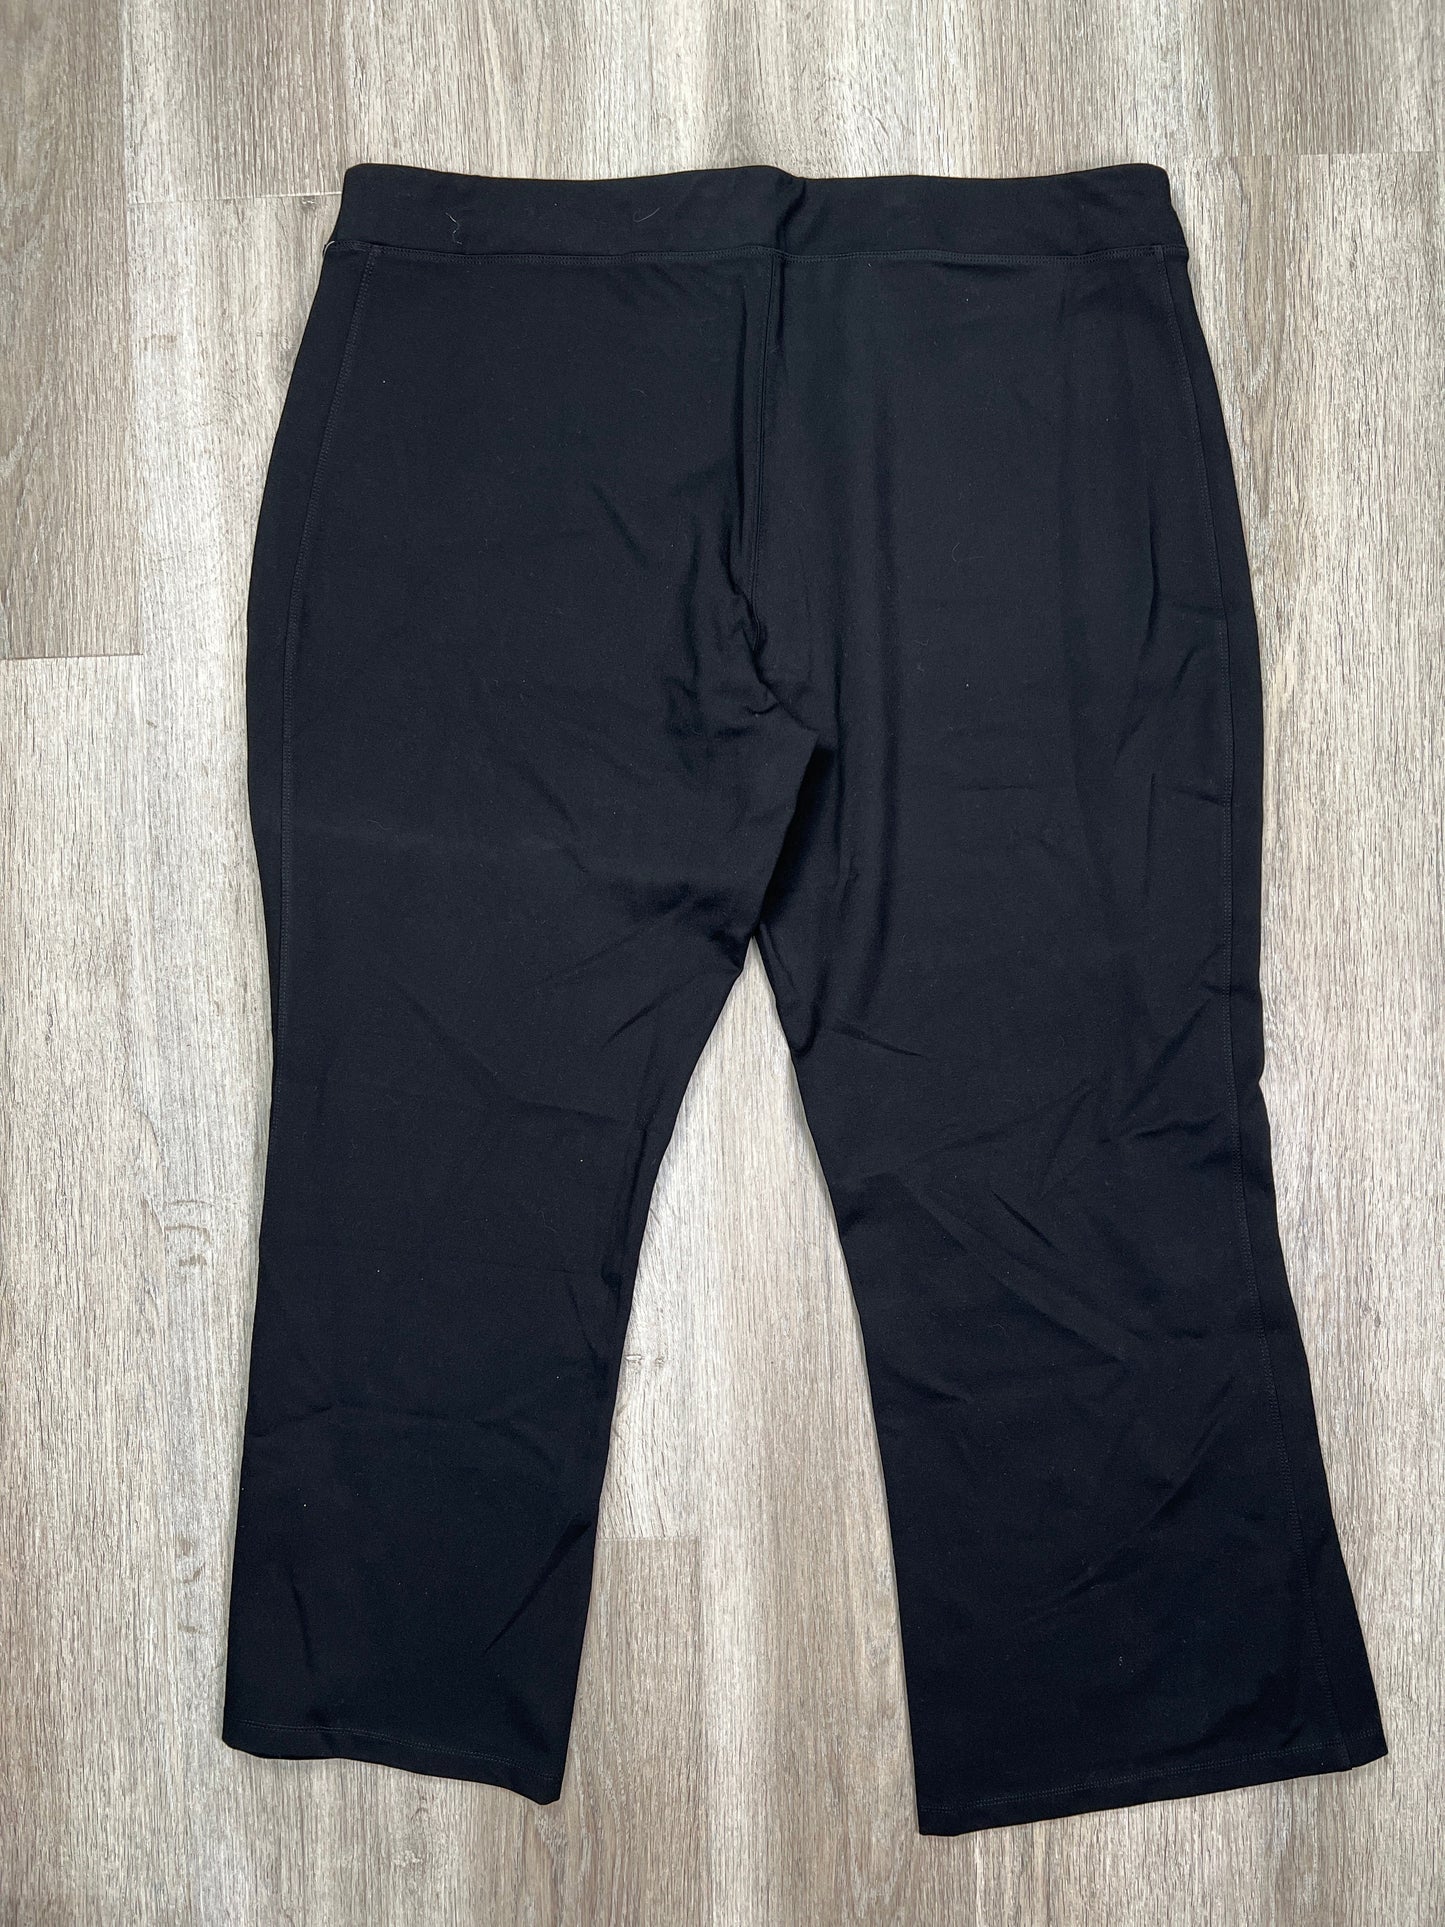 Black Pants Dress Cj Banks, Size 3x